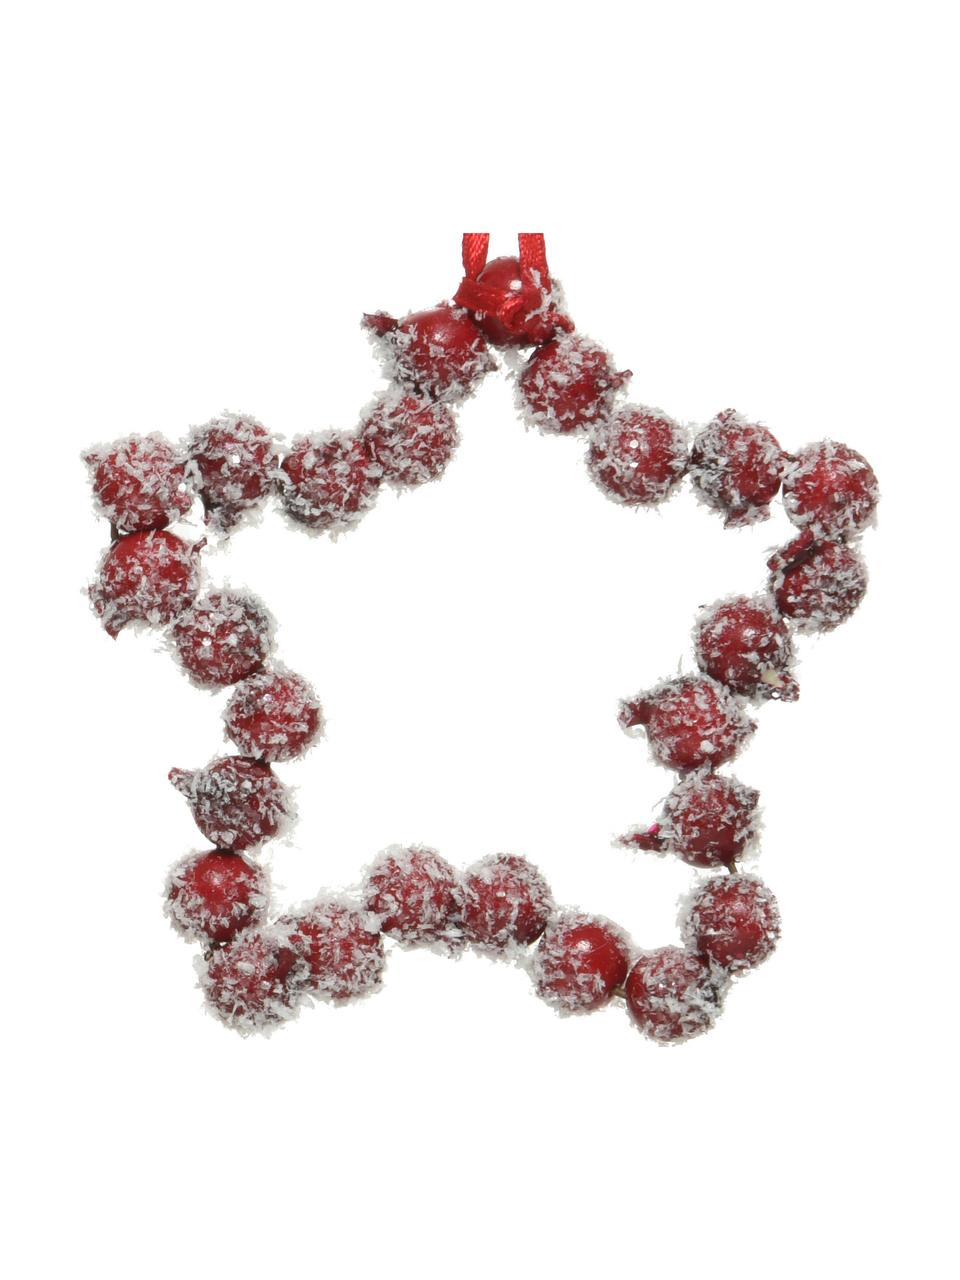 Ozdoby na stromeček Herz, V 9 cm, 4 ks, Červená, bílá, Š 9 cm, V 9 cm